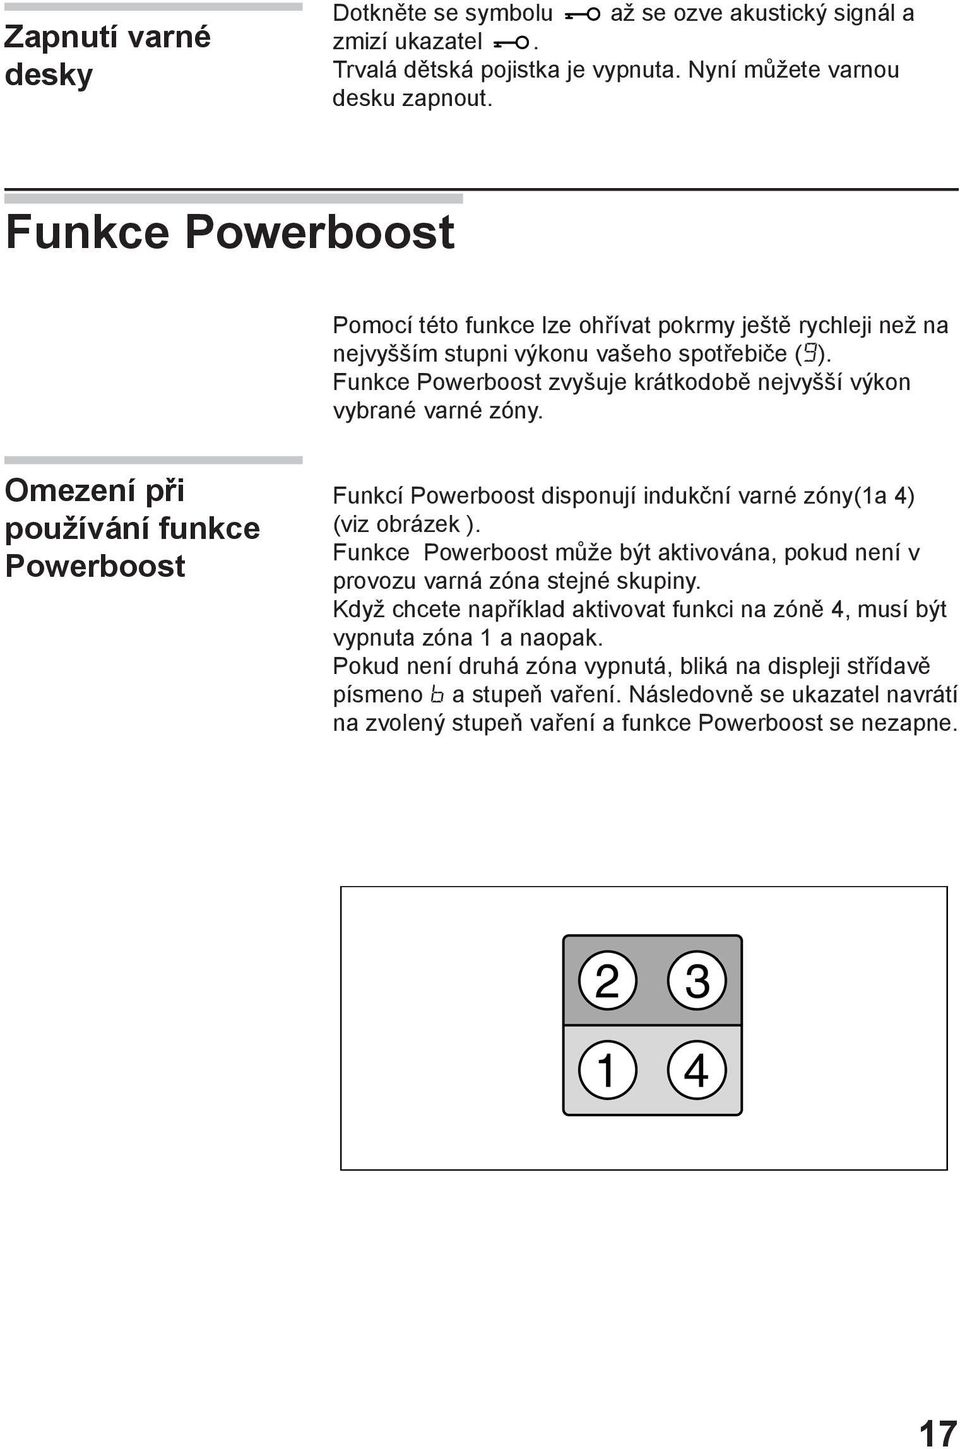 Omezení při používání funkce Powerboost Funkcí Powerboost disponují indukční varné zóny(1a 4) (viz obrázek ). Funkce Powerboost může být aktivována, pokud není v provozu varná zóna stejné skupiny.